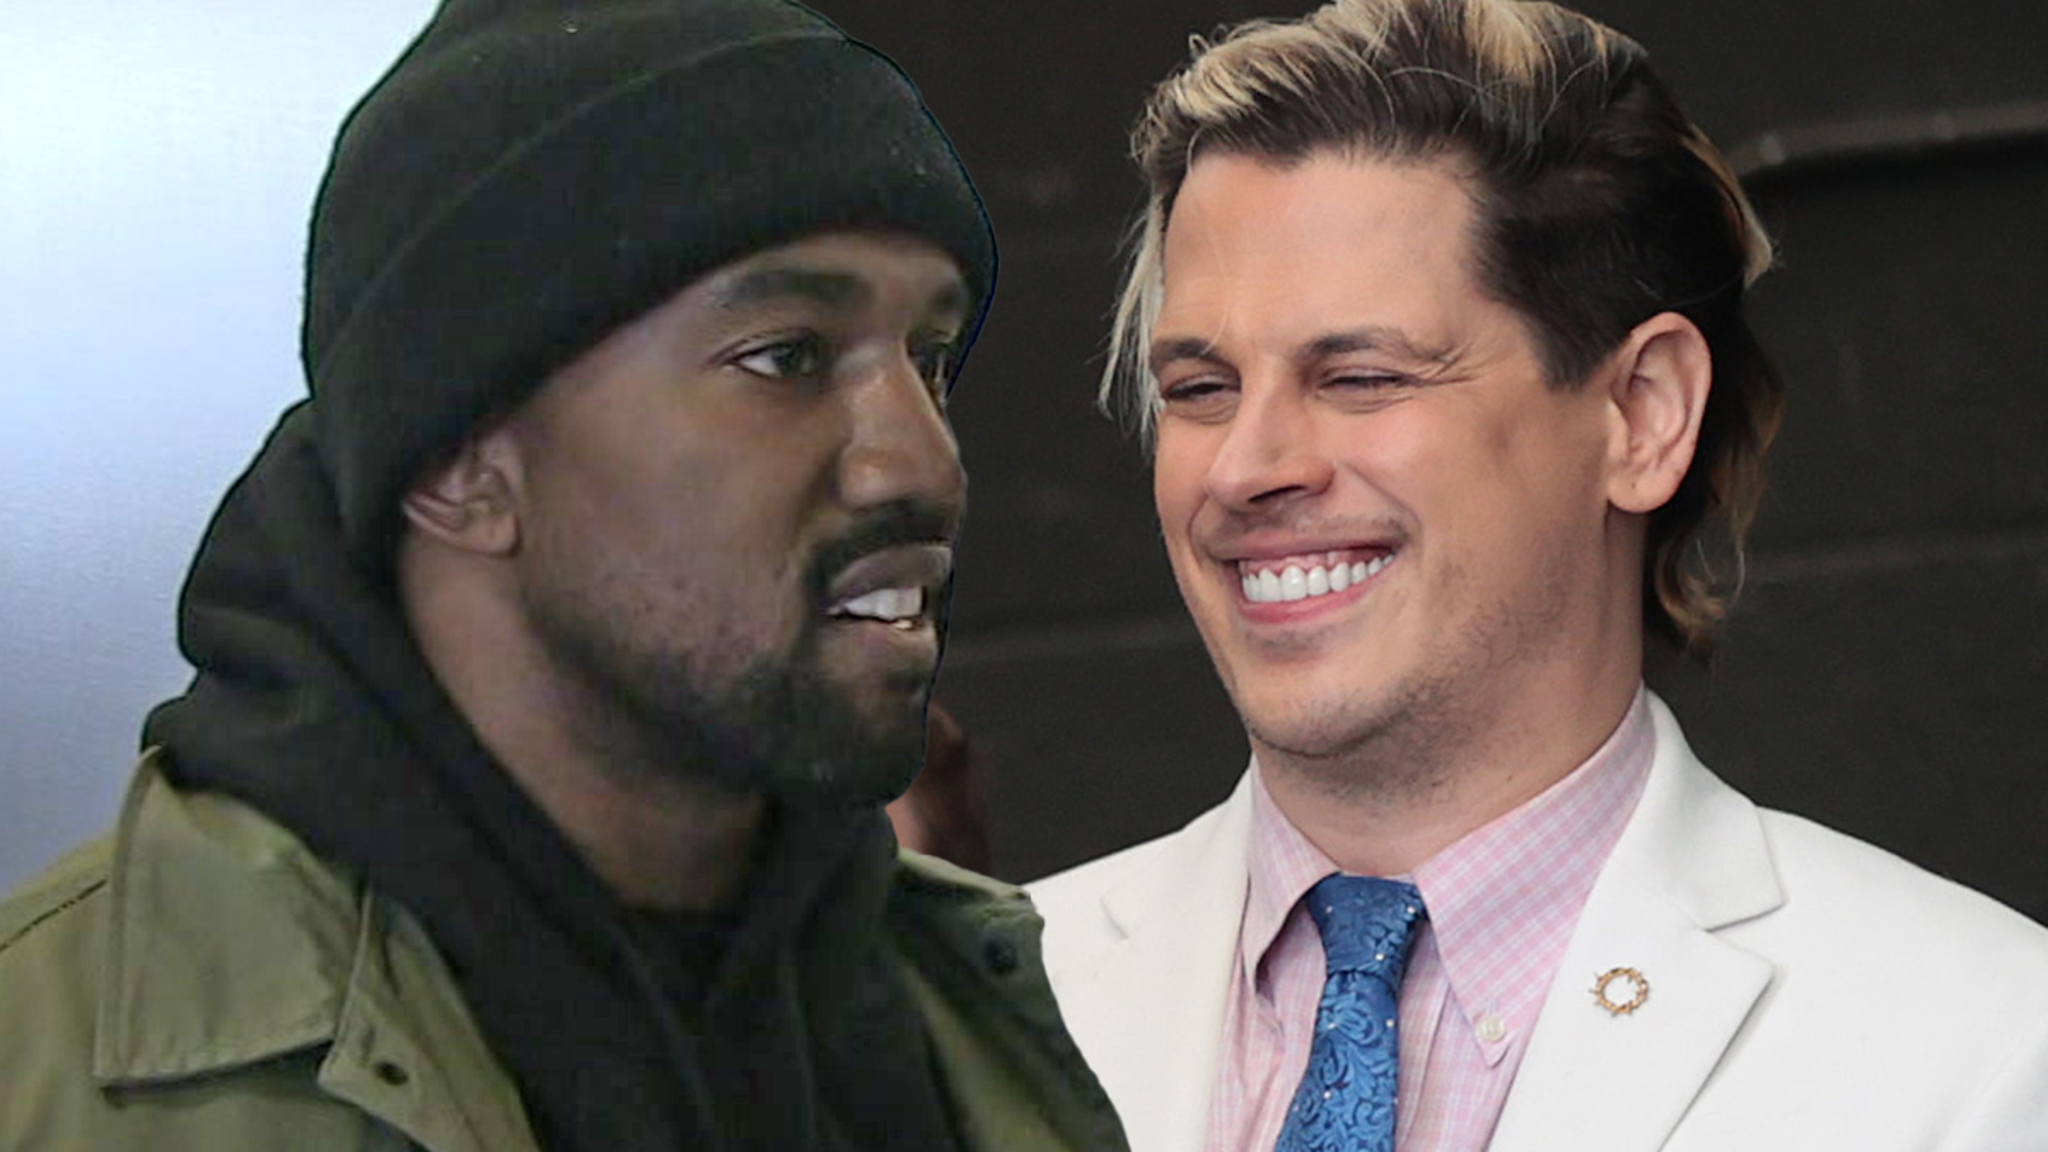 Kanye West contrata a Milo Yiannopoulos para dirigir la campaña YE24, calza a Nick Fuentes